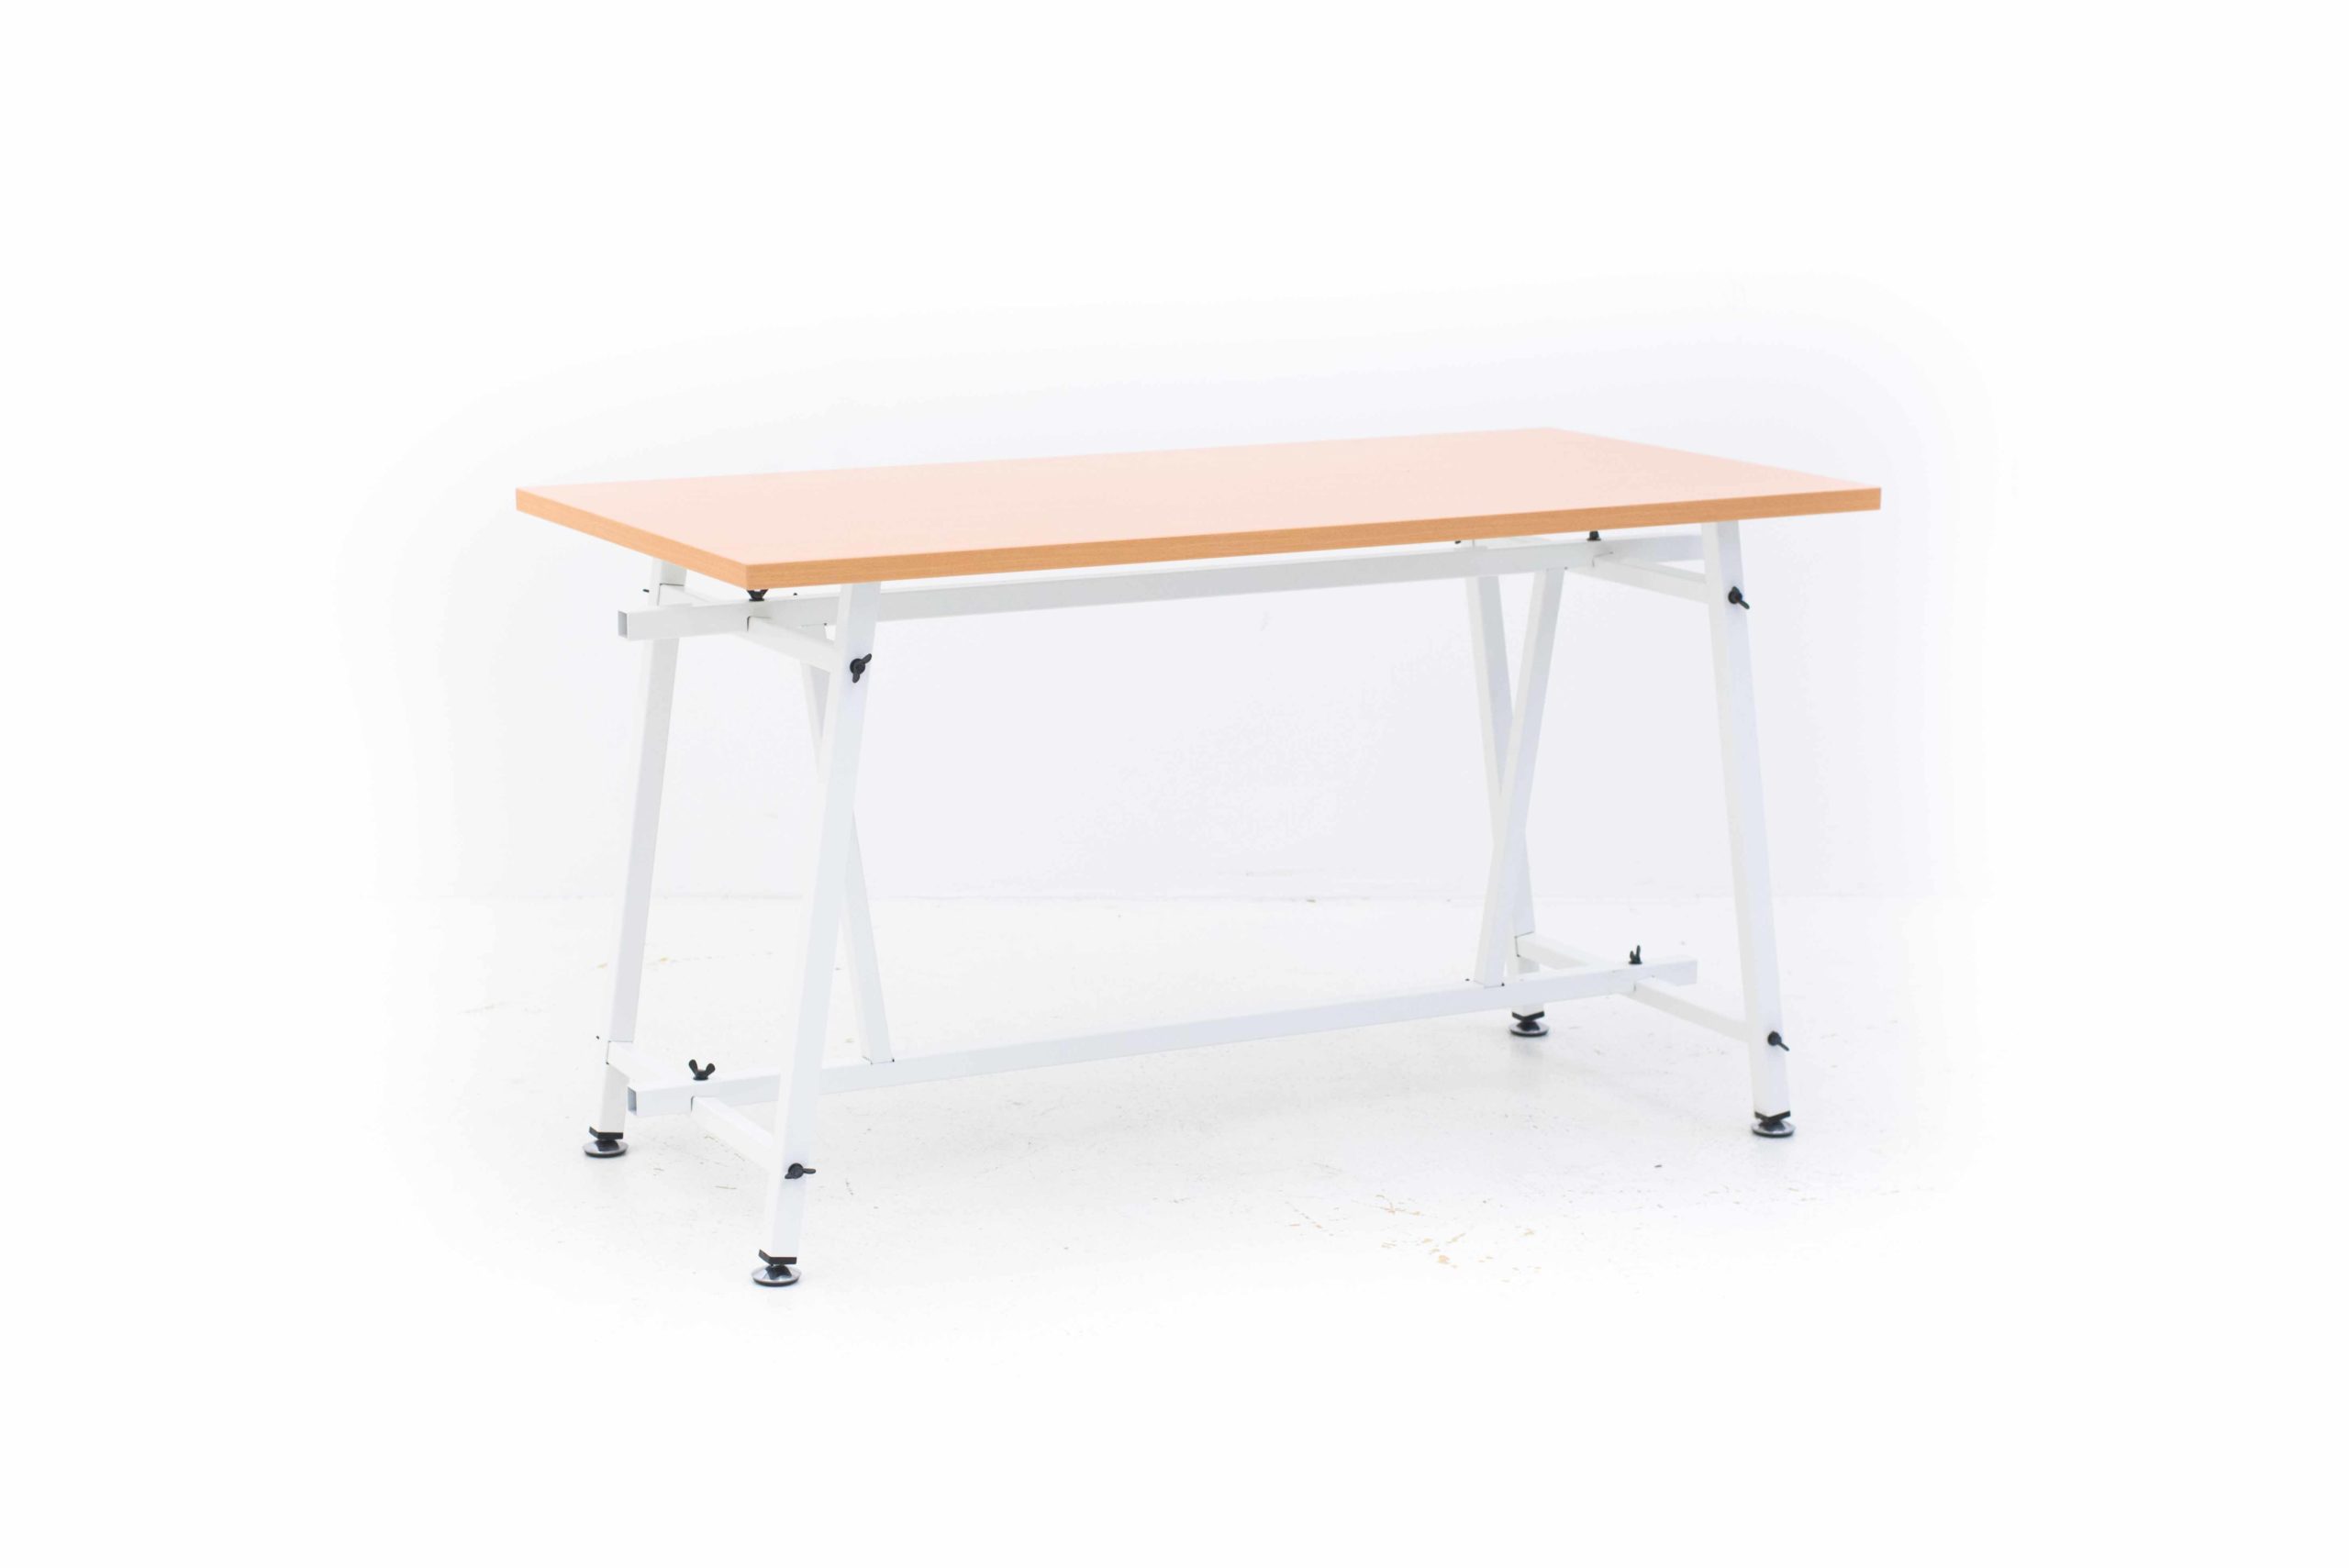 Christophe Marchand Atelier Tisch 4030 von Embru-0